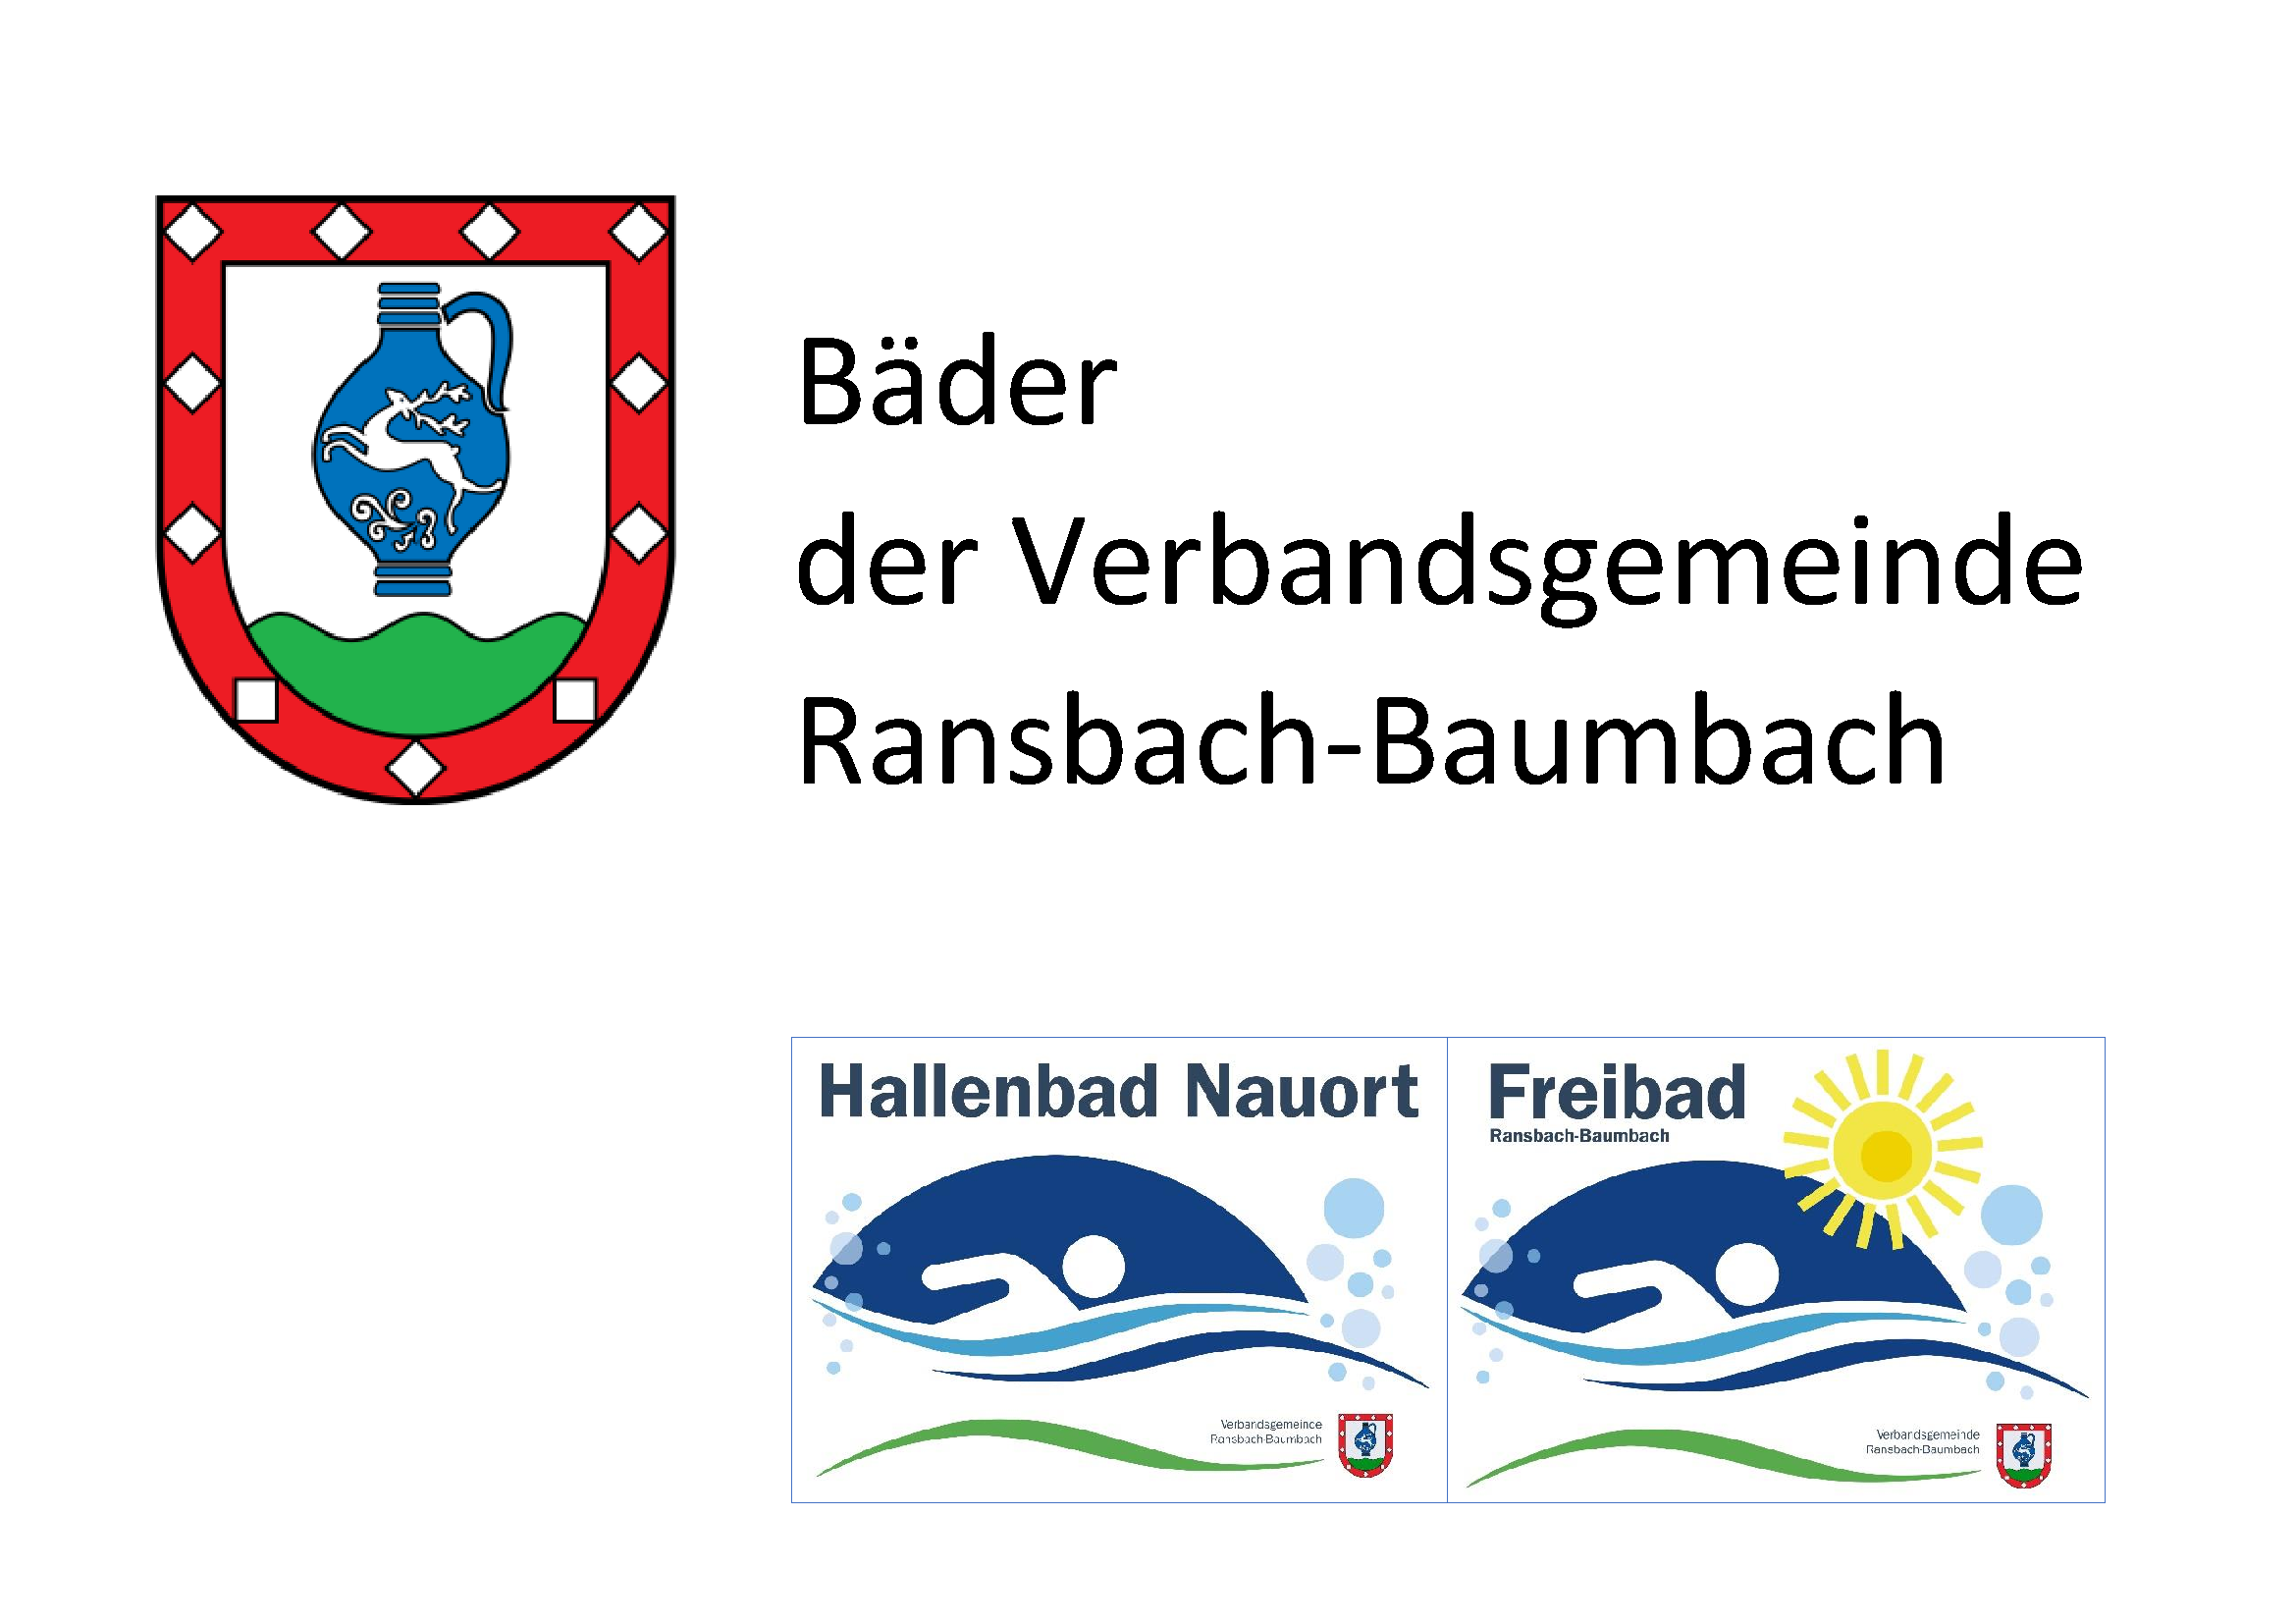 Bäder der Verbandsgemeinde Ransbach-Baumbach